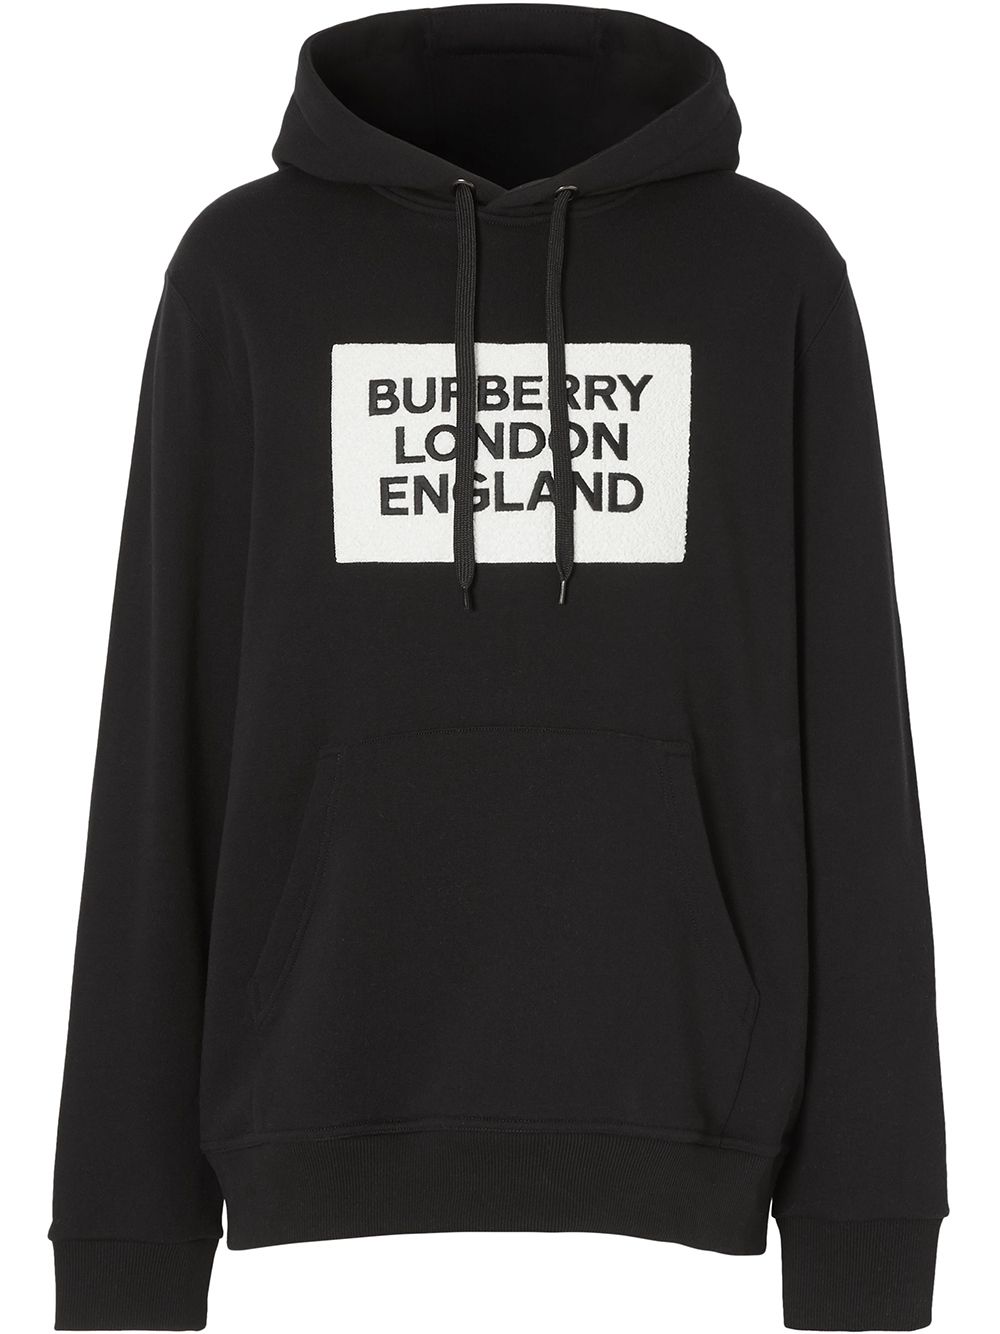 burberry of london hoodie